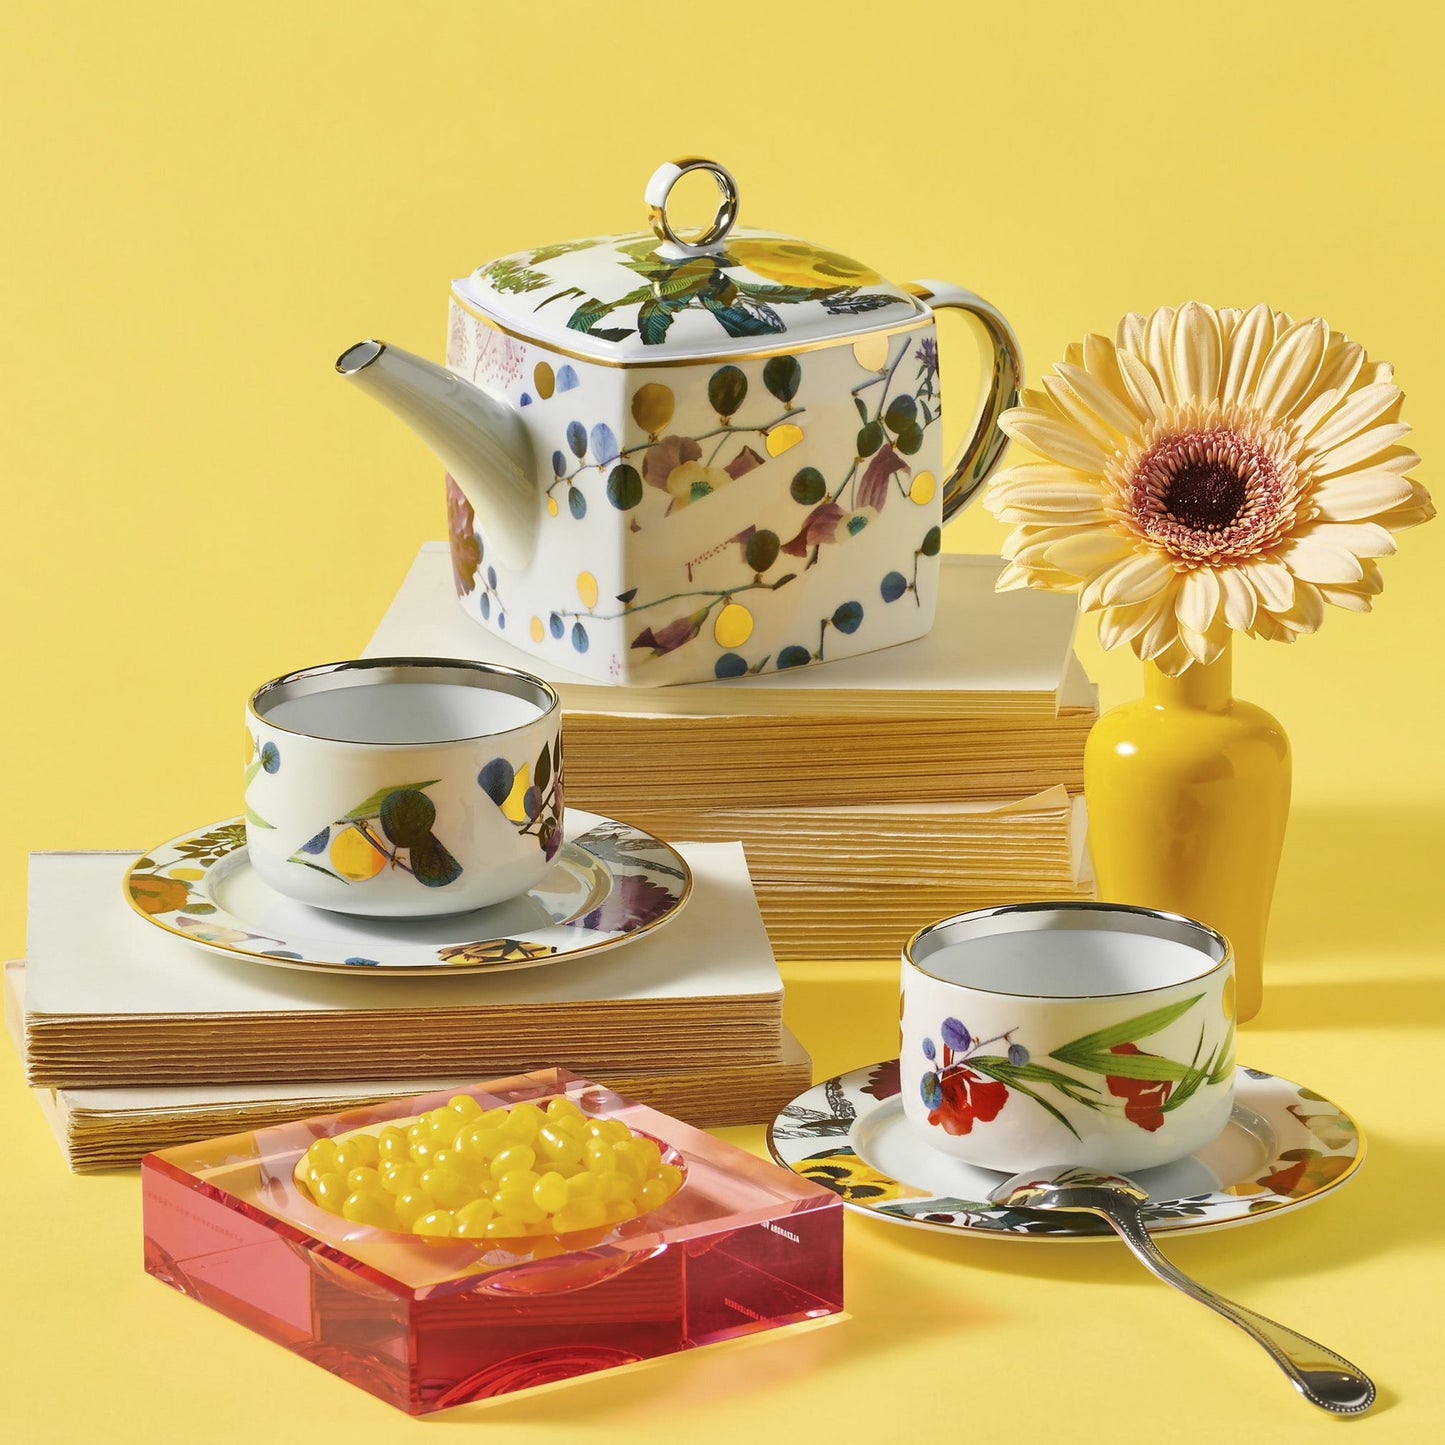 Primavera Teacups & Saucers, Set of 2